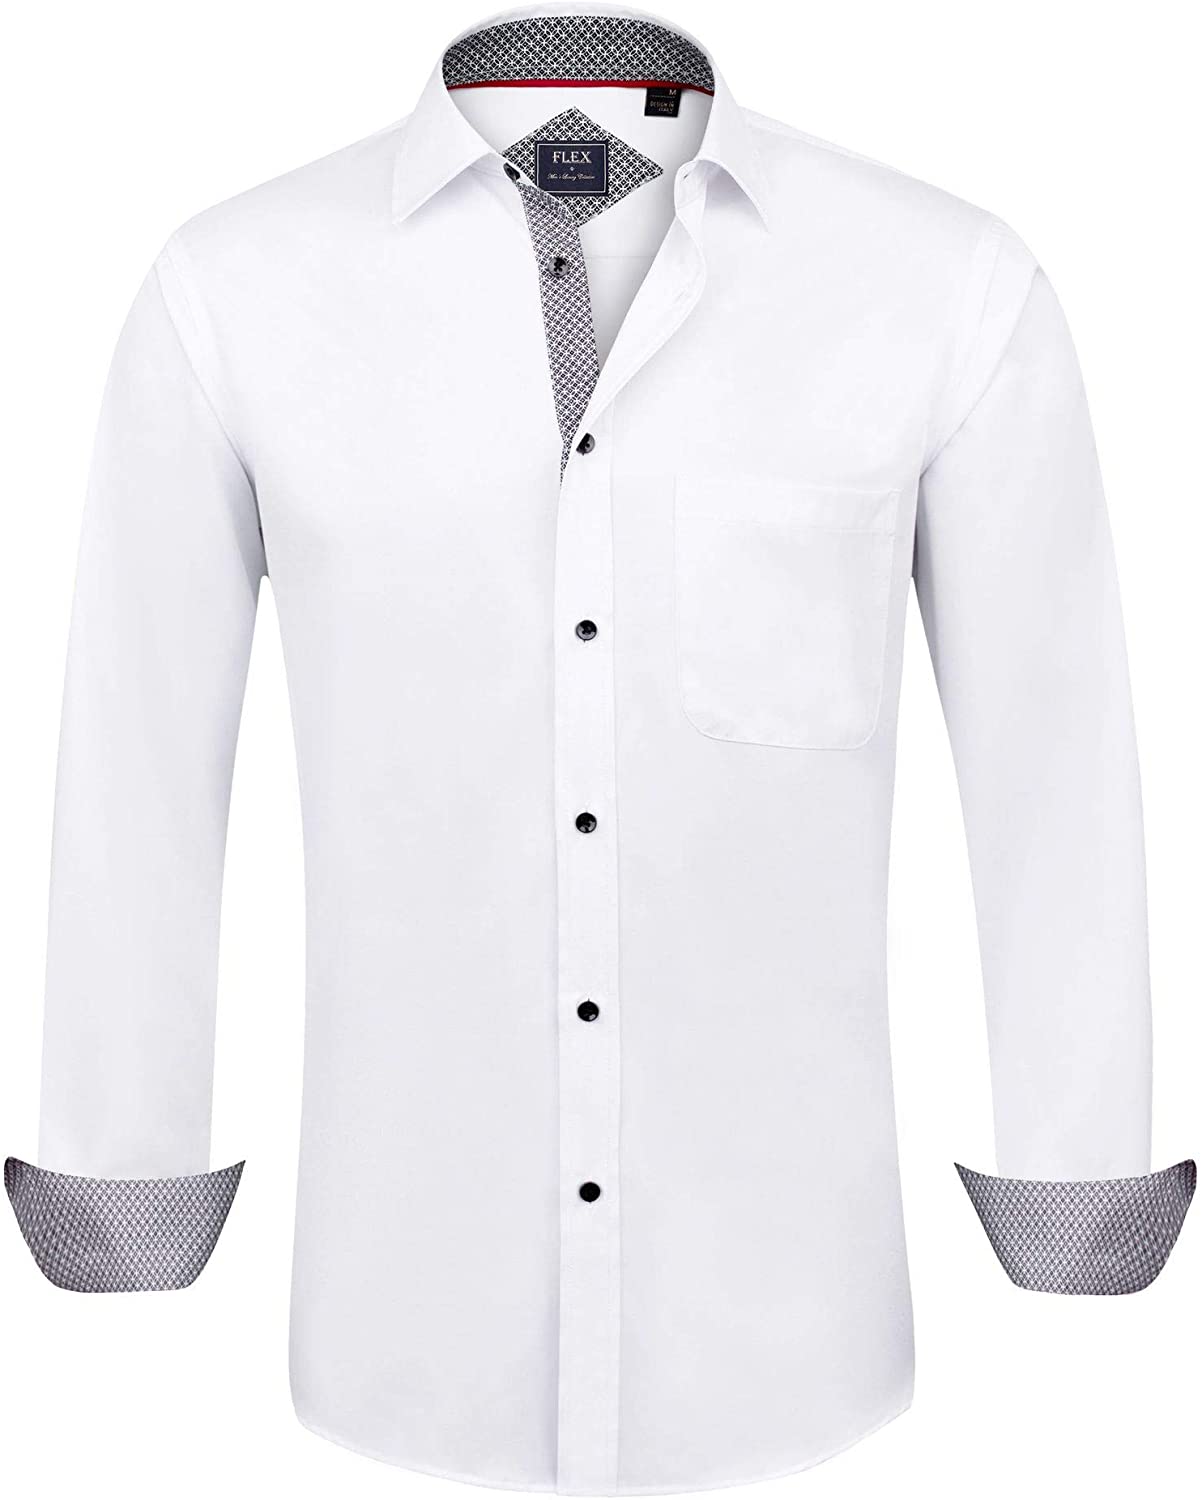 Alimens & Gentle Design Solid Color Regular Fit Long Sleeve Dress Shirts 